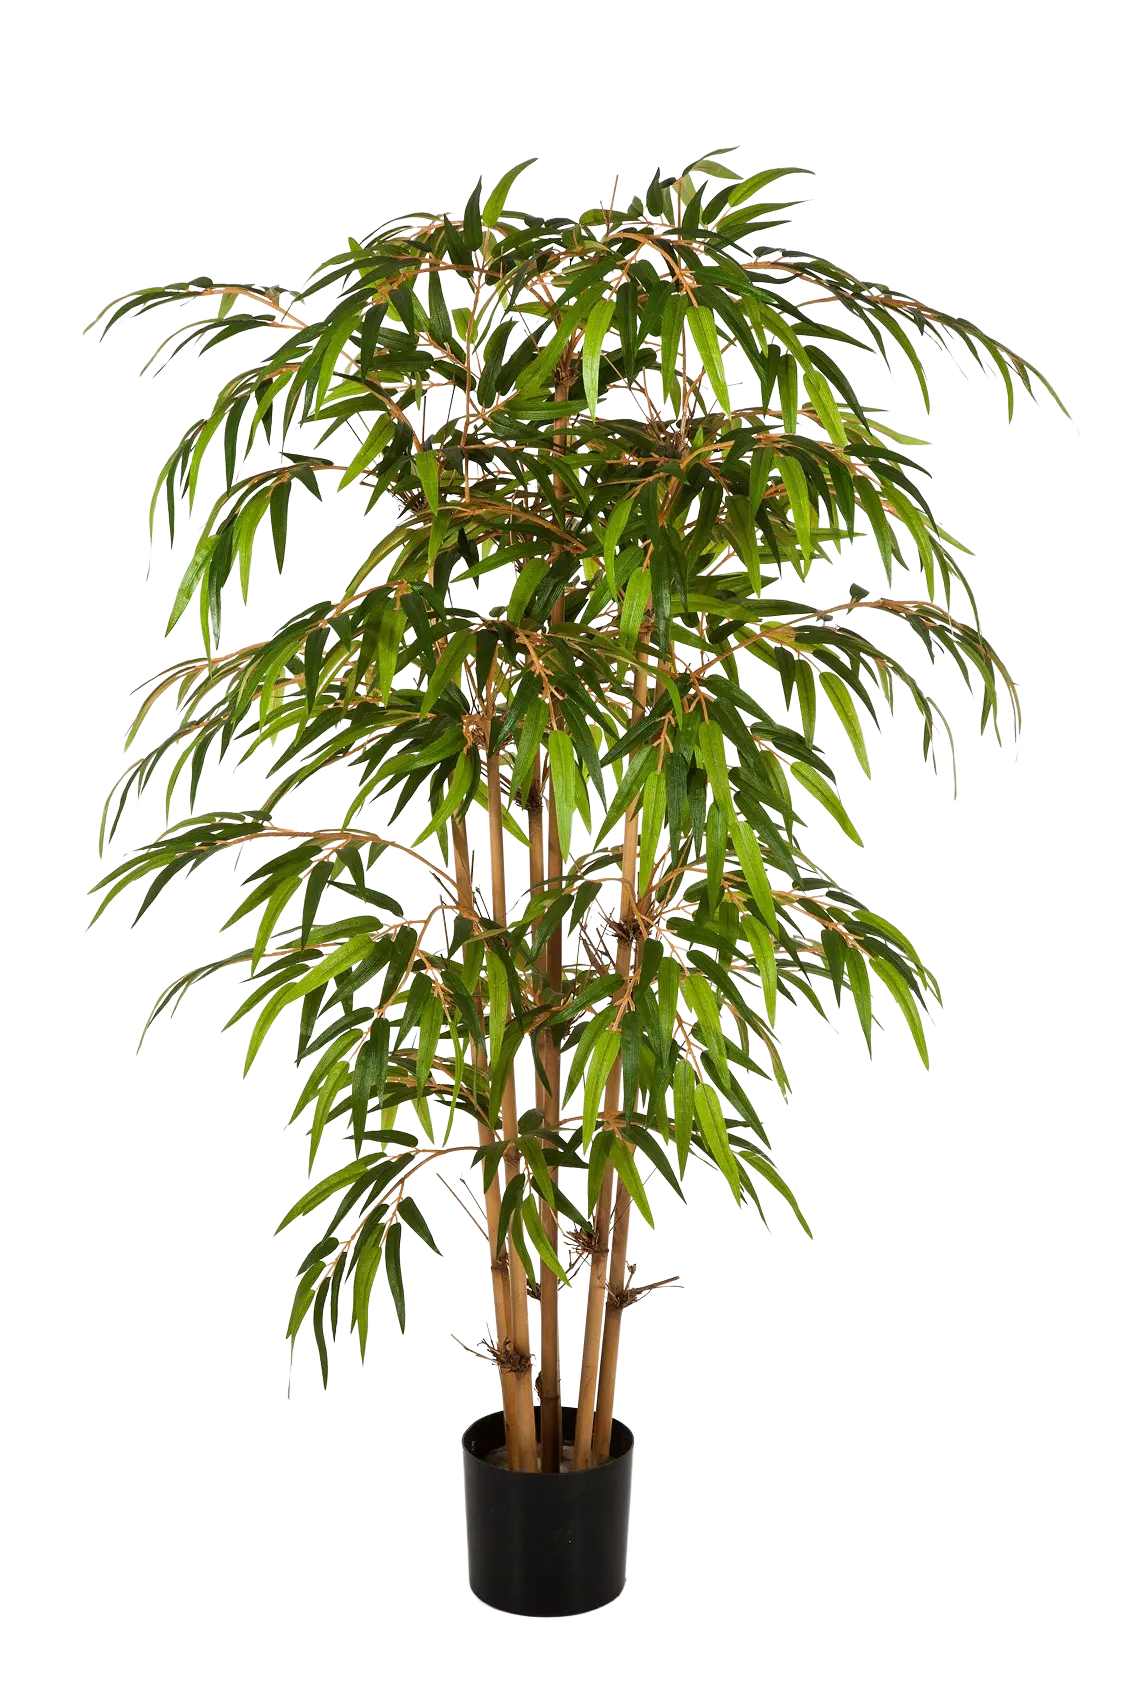 Künstlicher Bambus - Lasse auf transparentem Hintergrund mit echt wirkenden Kunstblättern. Diese Kunstpflanze gehört zur Gattung/Familie der "Bambuse" bzw. "Kunst-Bambuse".